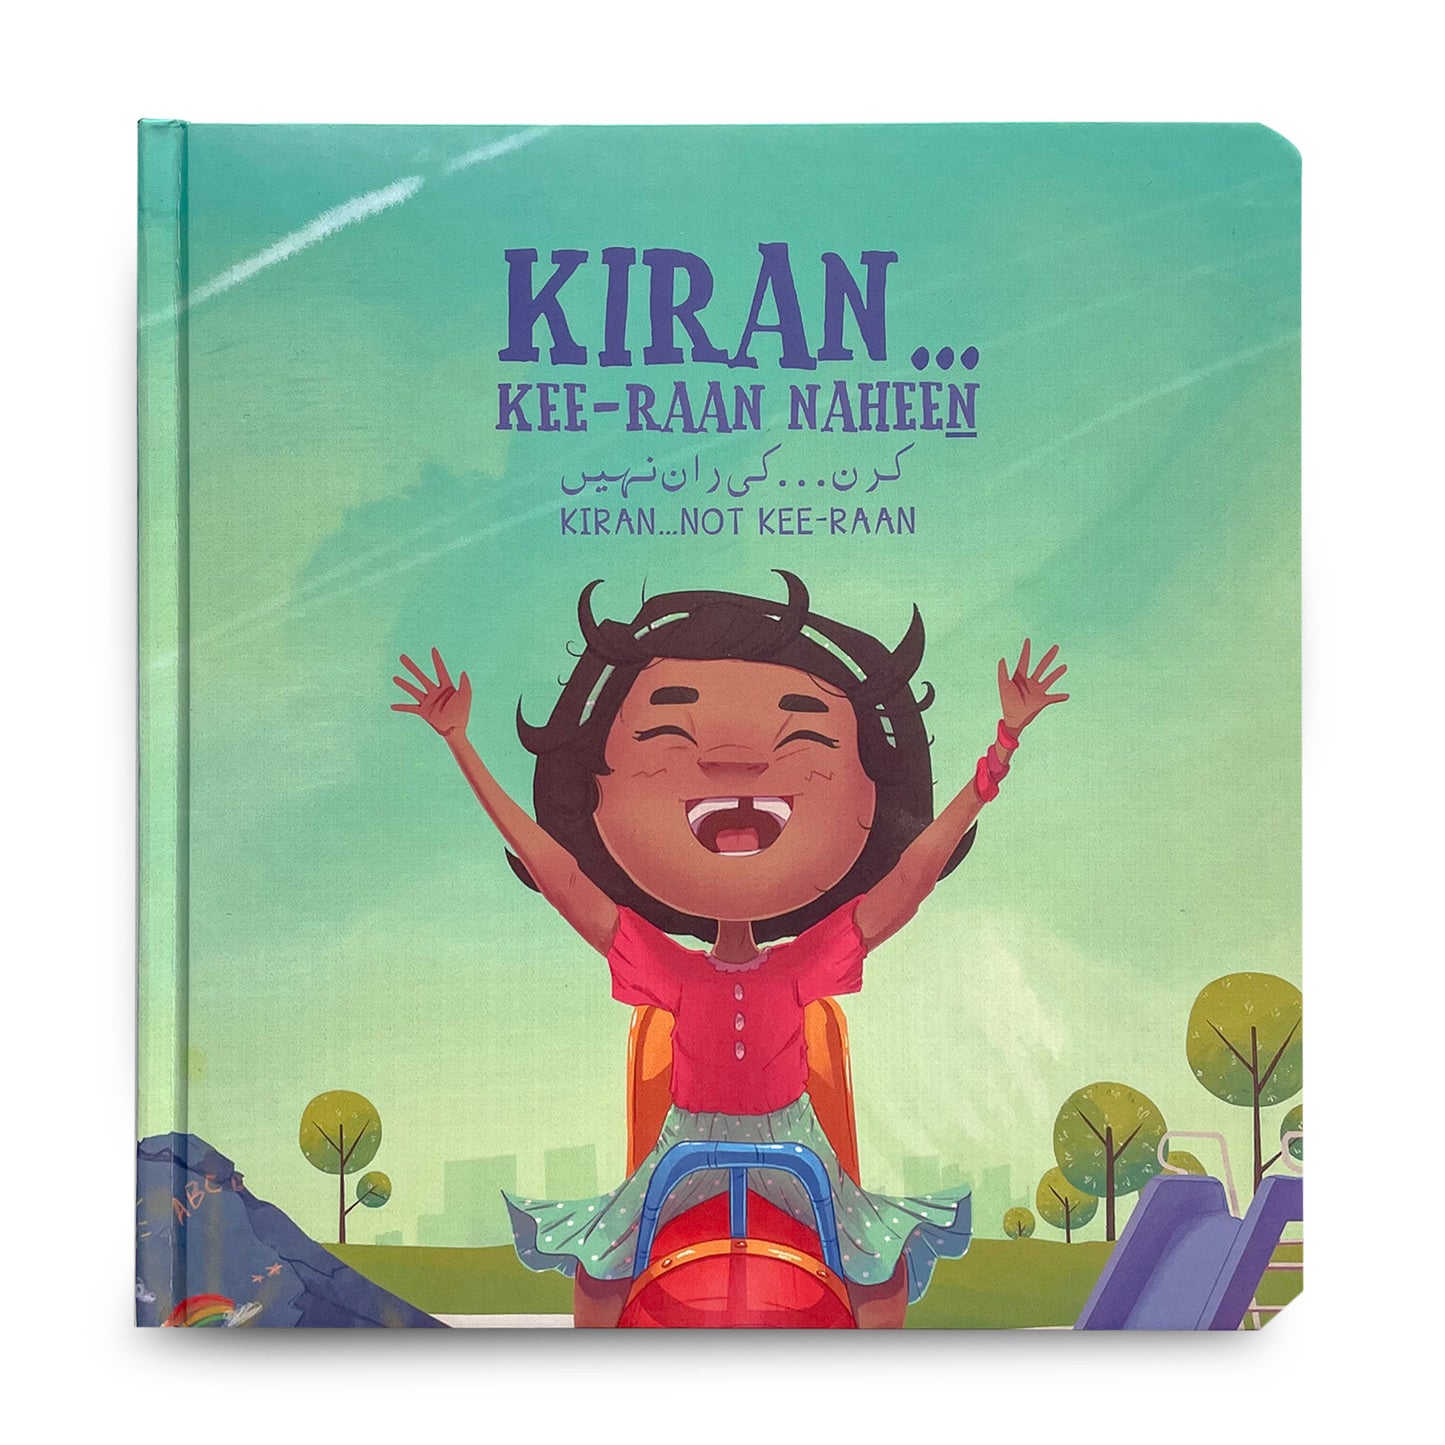 Kiran...Kee-raan naheen (Kiran...not Kee-raan) - Stories